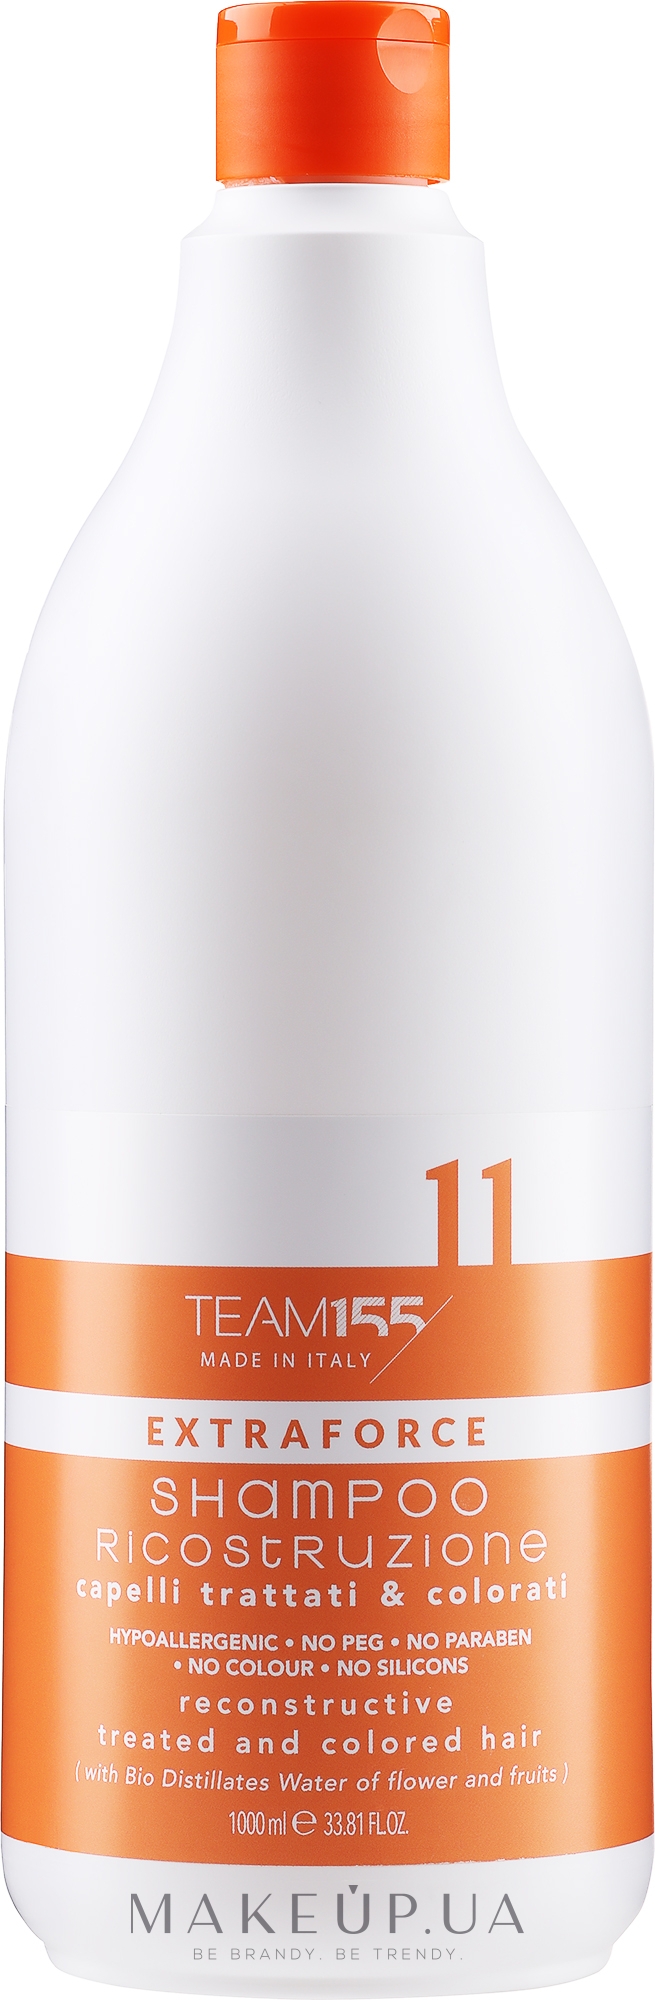 Шампунь для восстановления поврежденных и окрашенных волос - Team 155 Extraforce 11 Shampoo — фото 1000ml